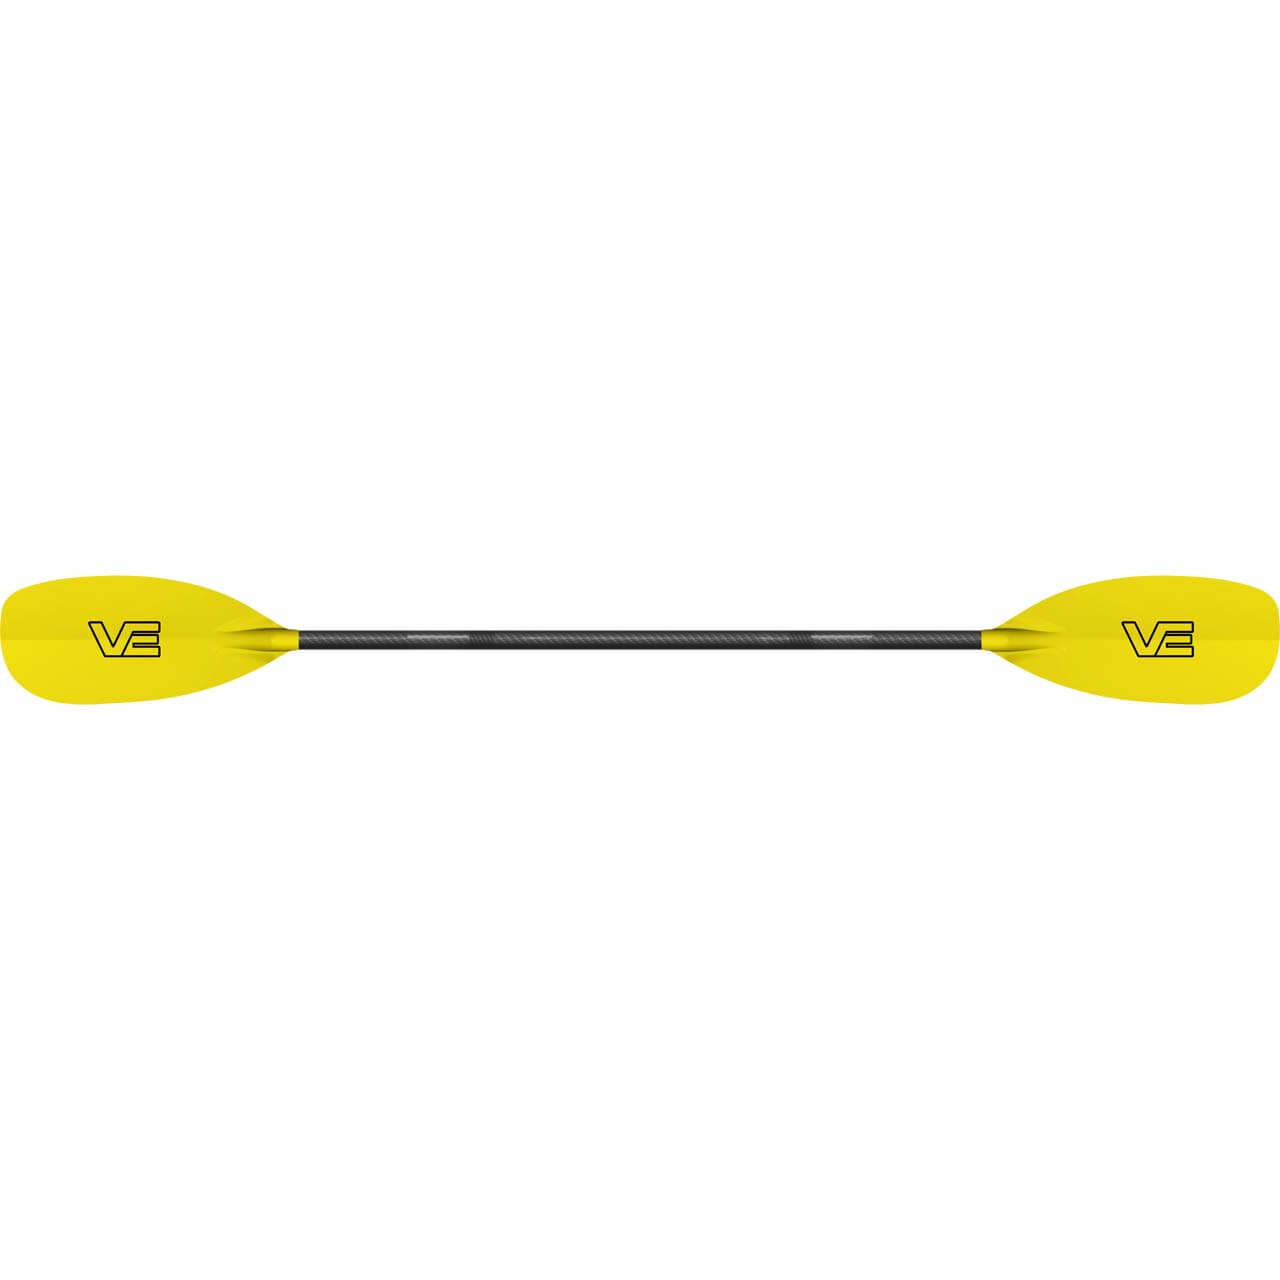 VE Creeker Wildwasserpaddel - Yellow, 197 (Bent)